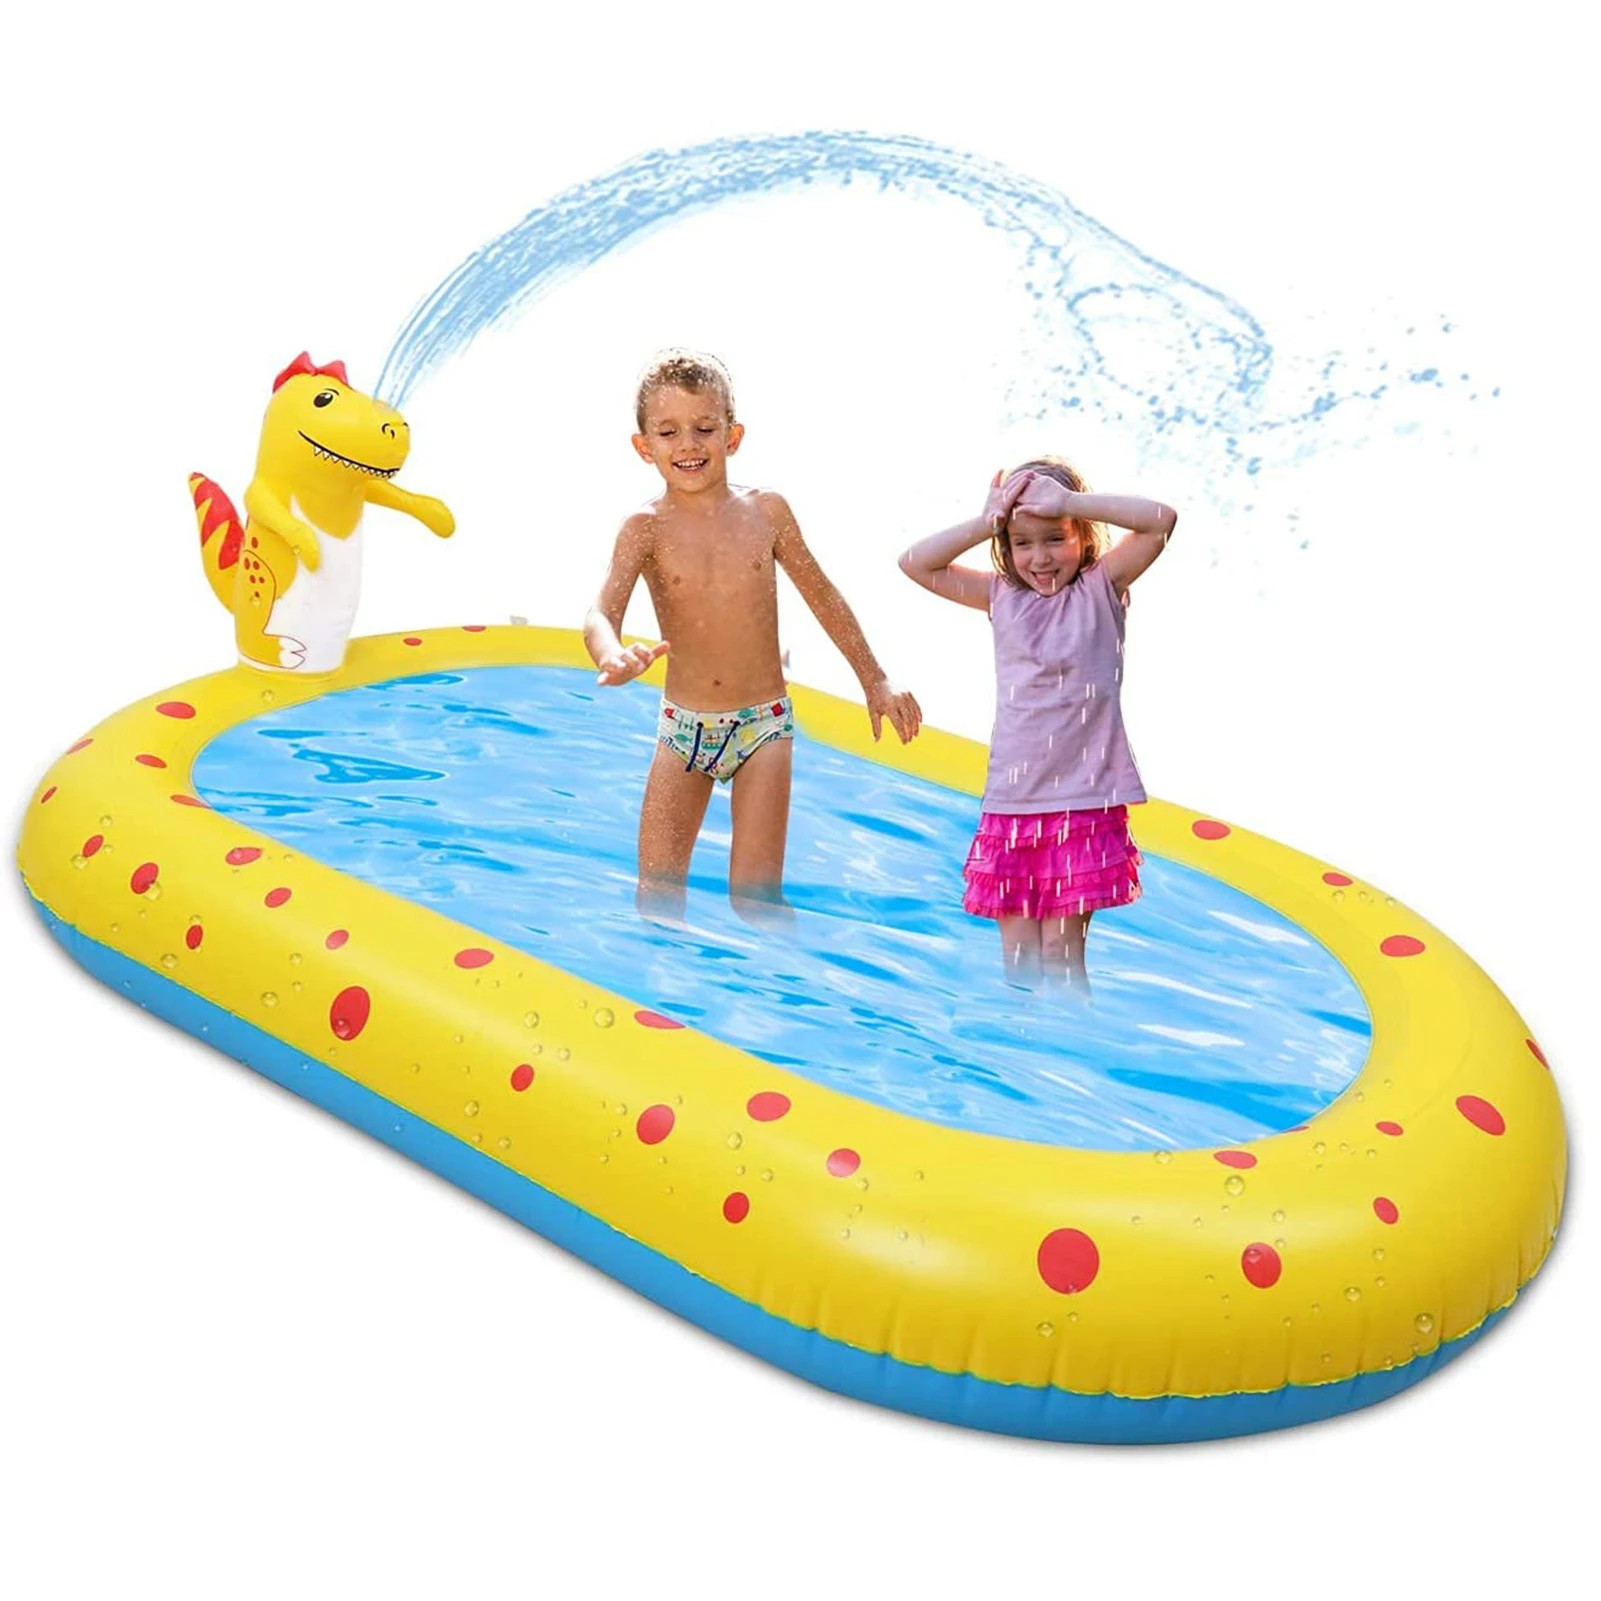 

Sprinkler Pad Splash Spielmatte, Kinder Sprinkler Pool Pad Wasser Spielzeug fur Kinder im Freien Sommer Garten Aufblasbares Wass, Blue,yellow